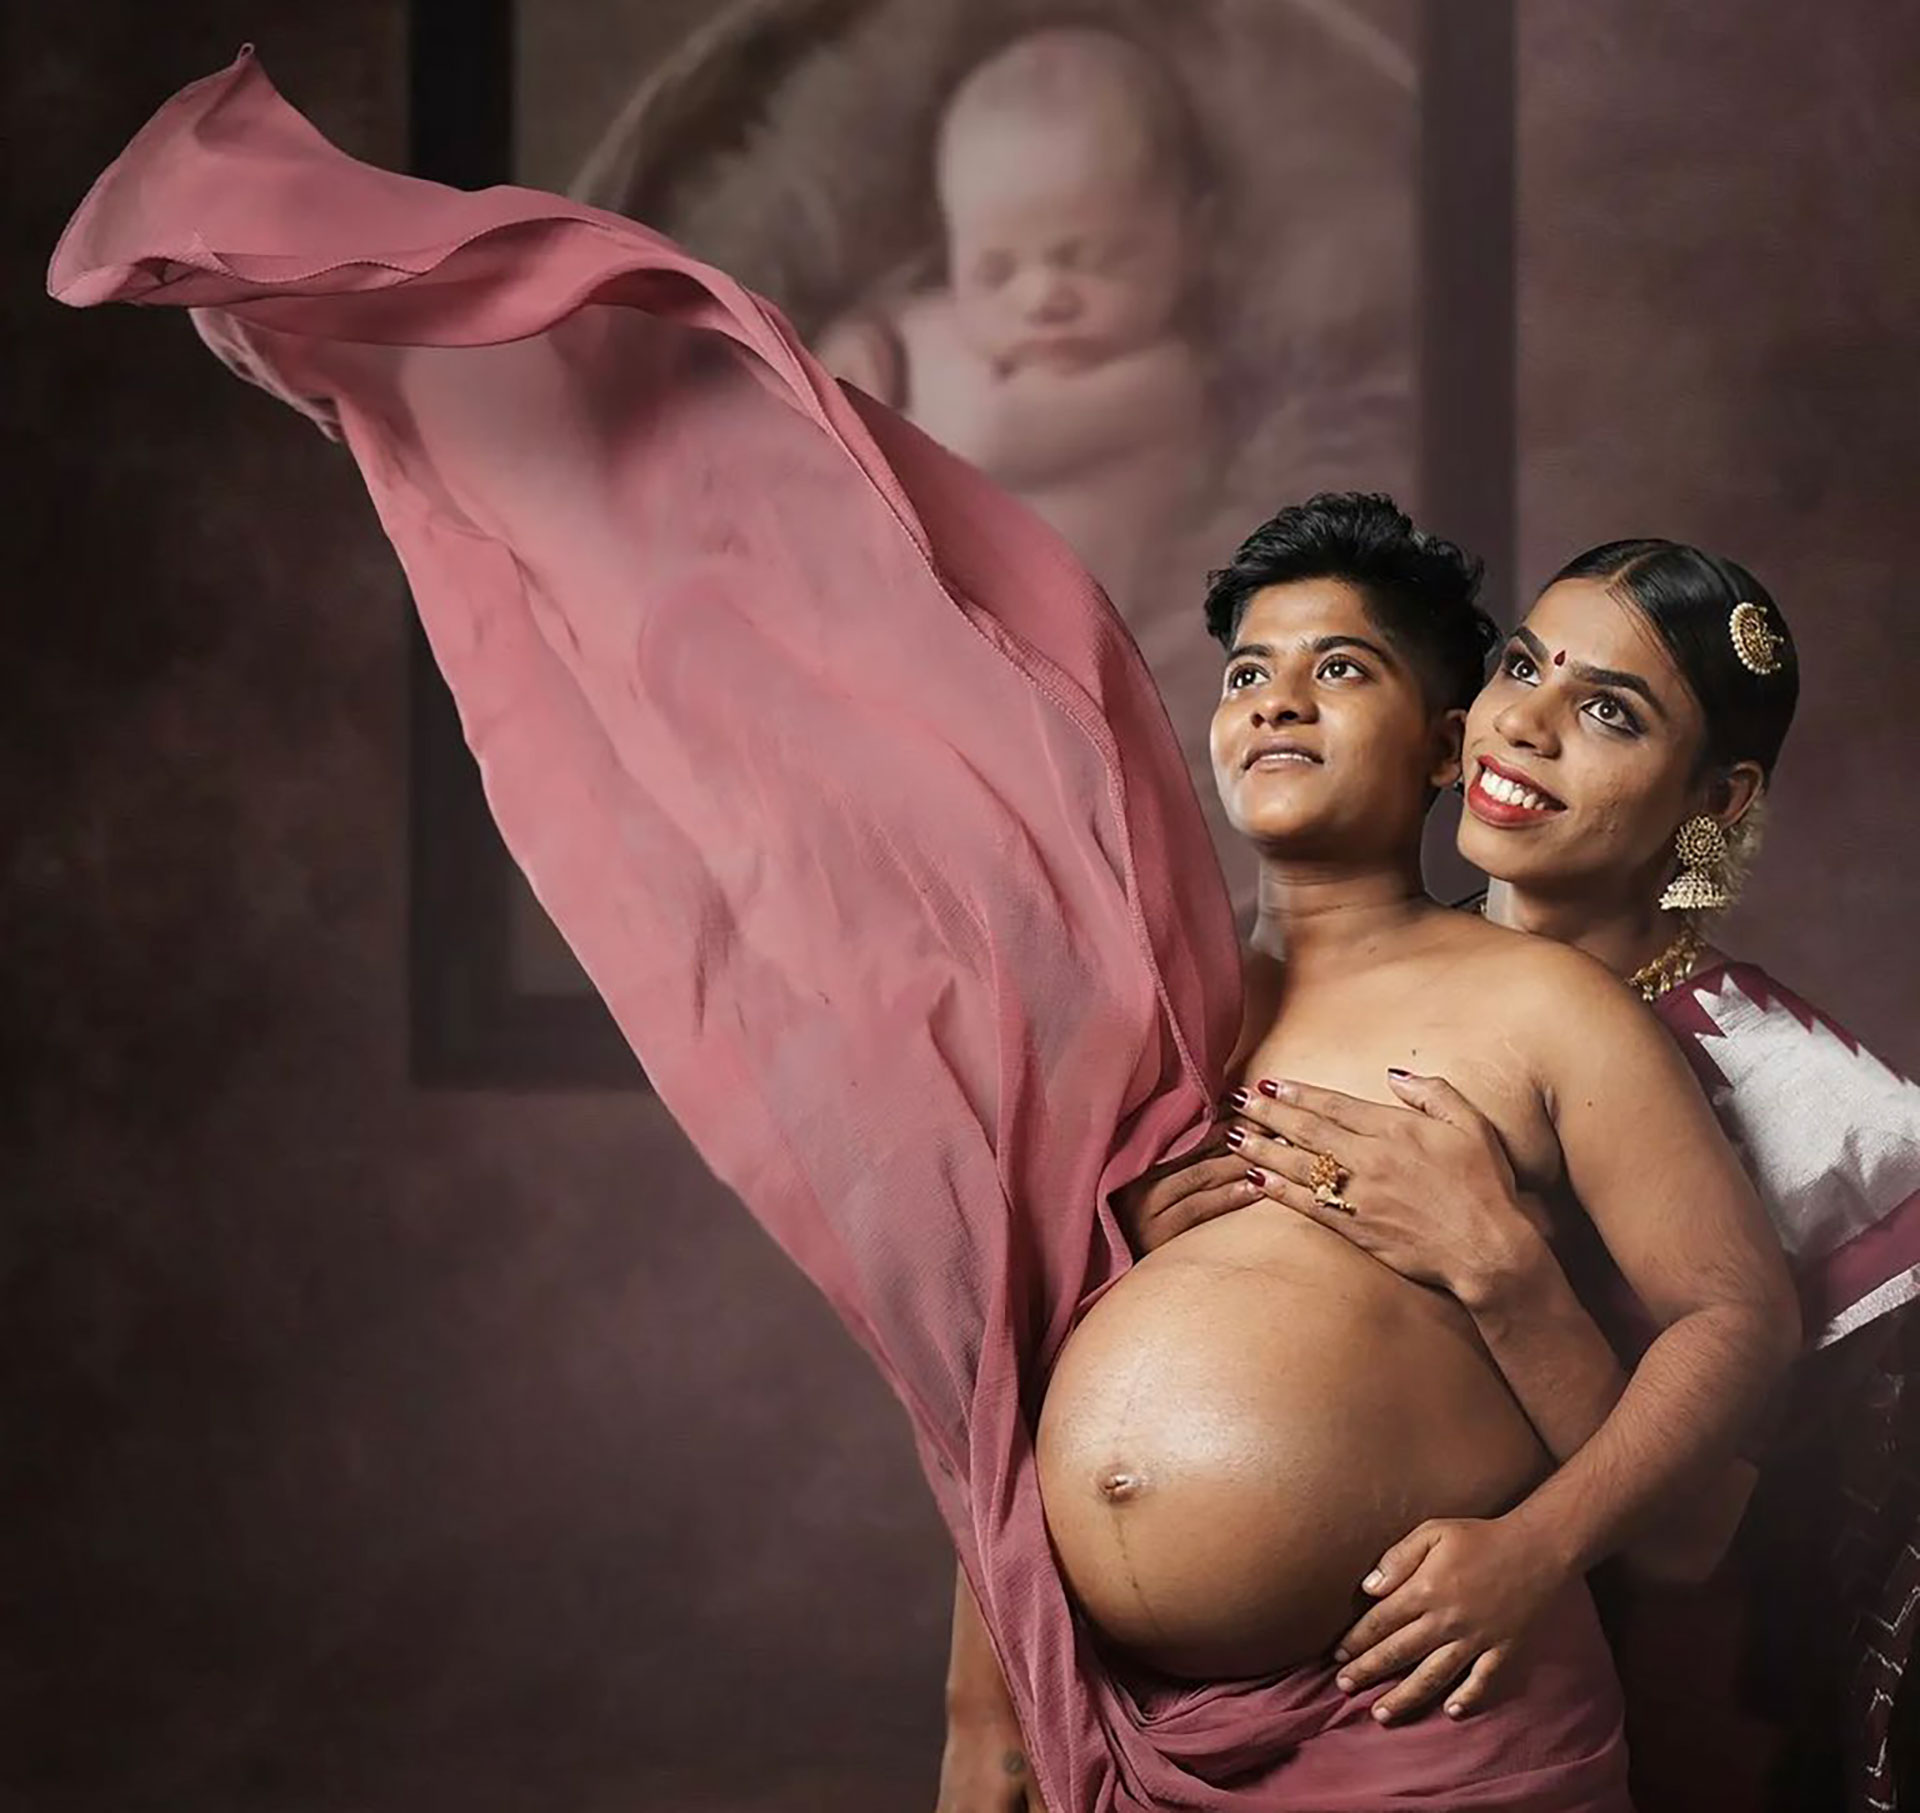 El nacimiento del primer hijo de Ziya Paval y Zahad, previsto para mañana, ha alcanzado una gran notoriedad en la India